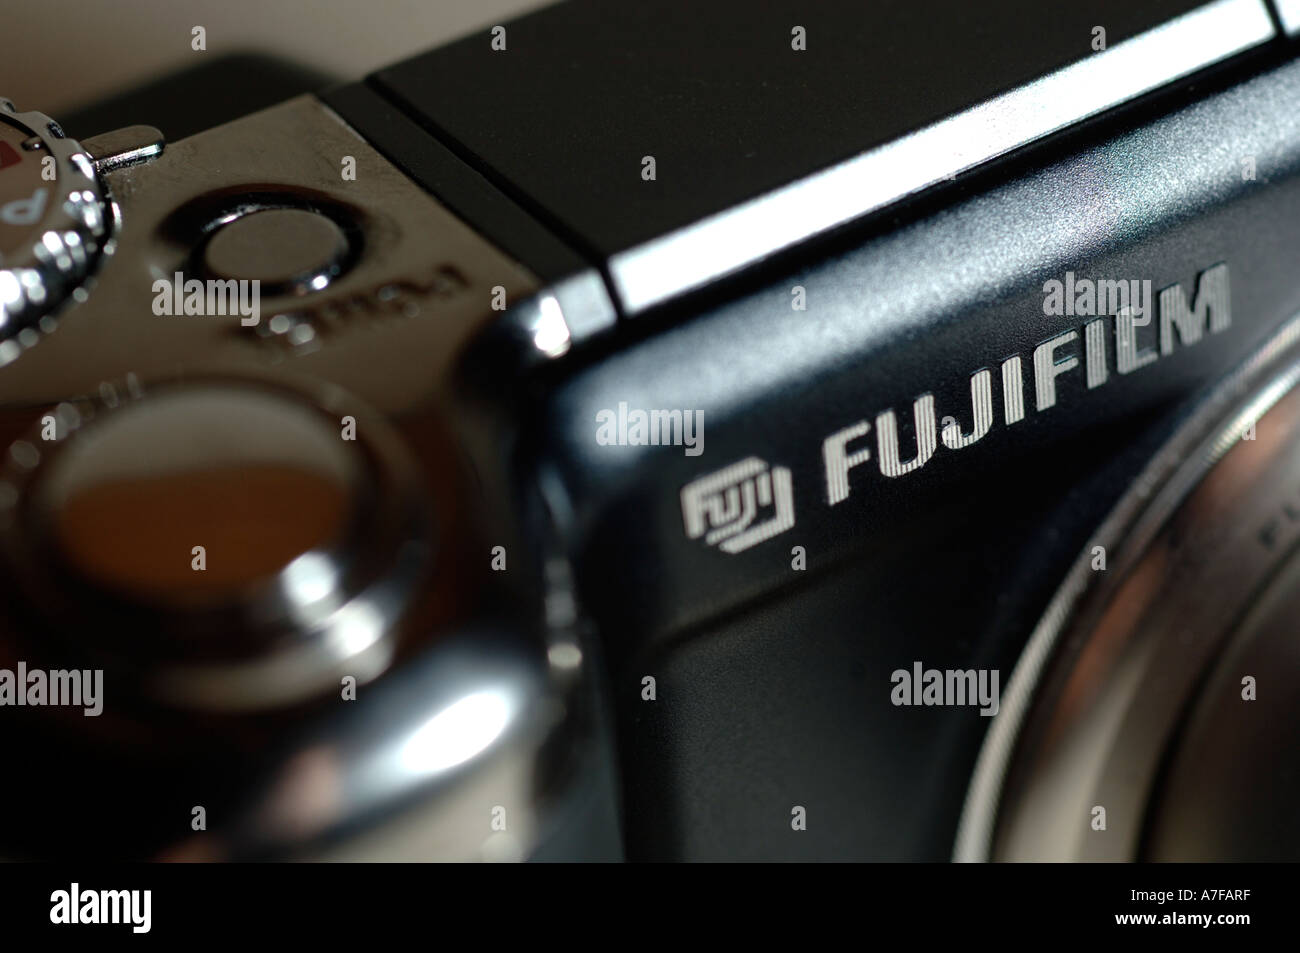 Appareil photo numérique Fujifilm Banque D'Images